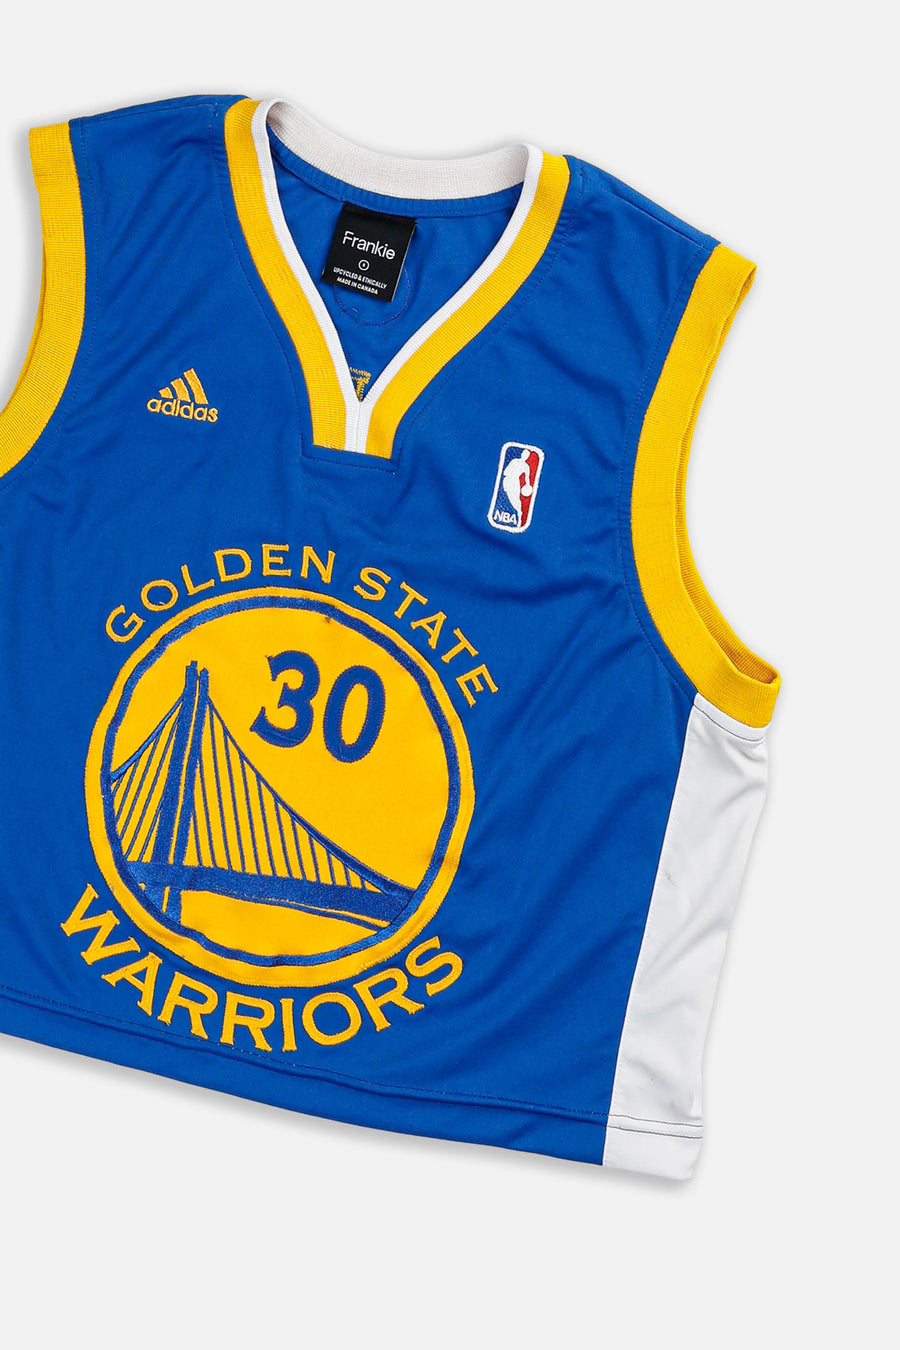 Rework Golden State Warriors NBA Crop Jersey - S